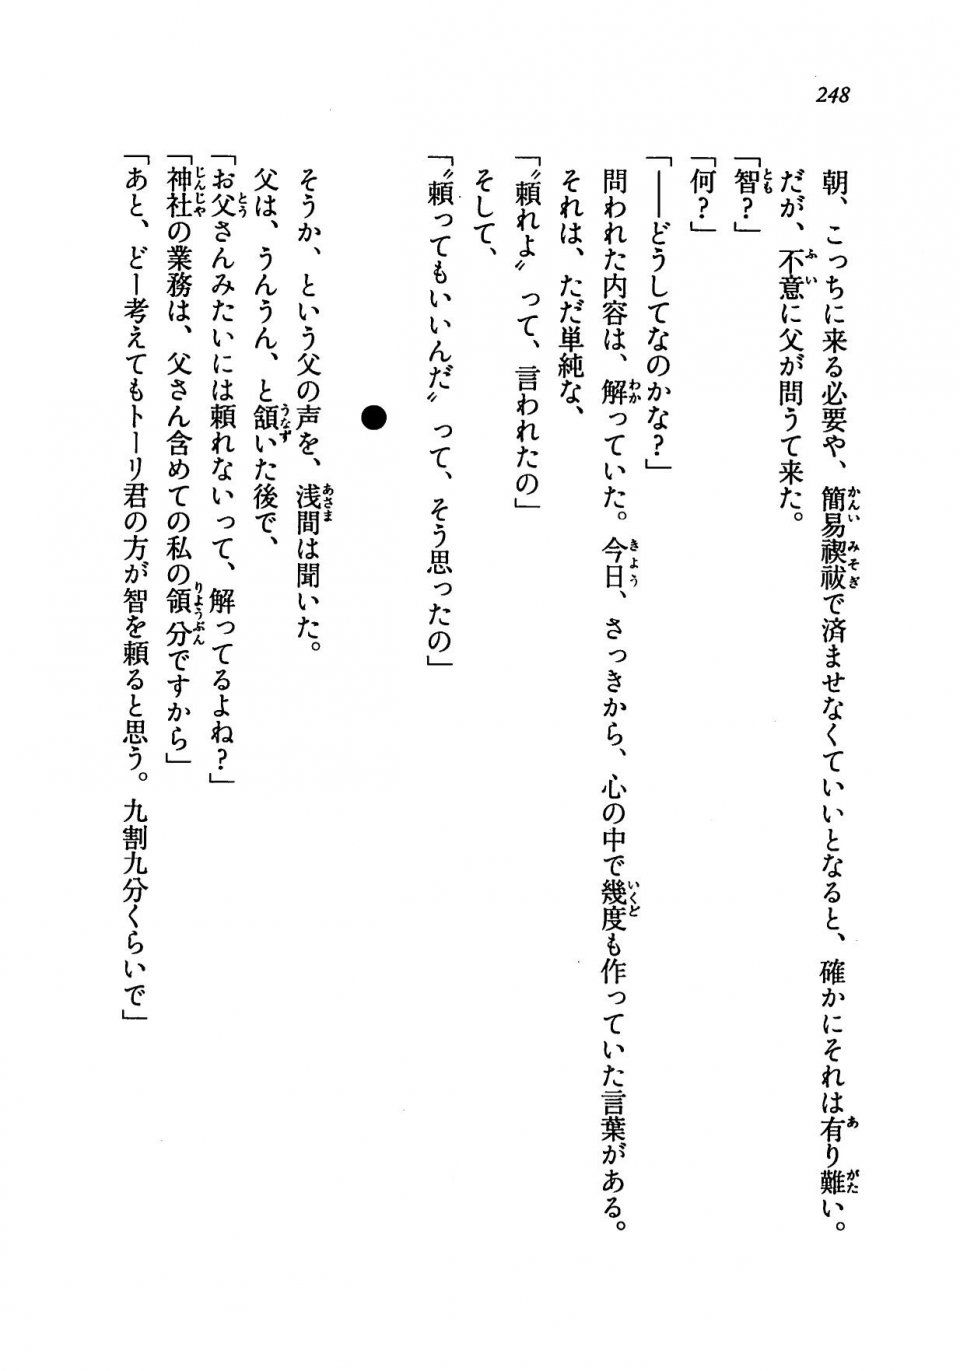 Kyoukai Senjou no Horizon LN Vol 19(8A) - Photo #248